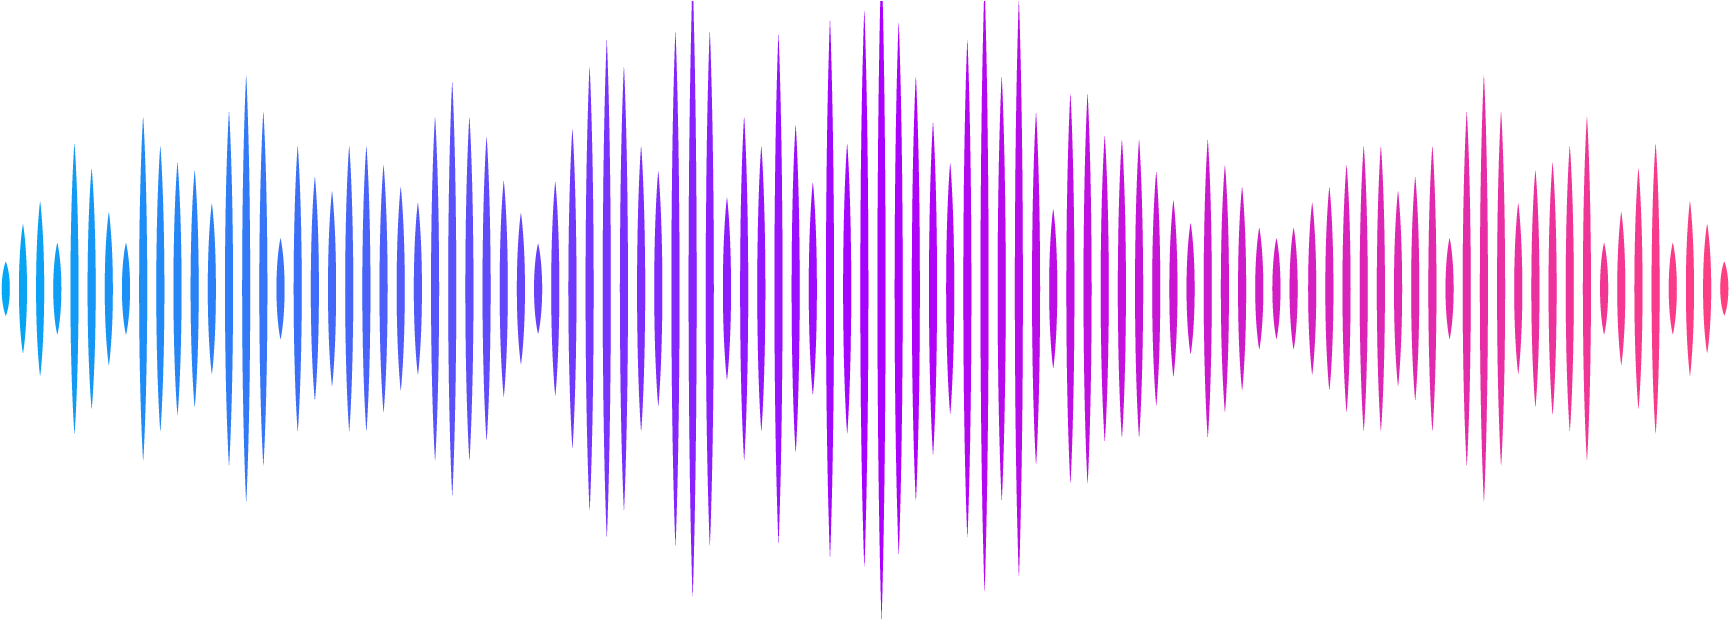 Голос снизу. Звуковая волна. Звуковая дорожка. Графическое изображение звука. Звуковая волна эквалайзер.